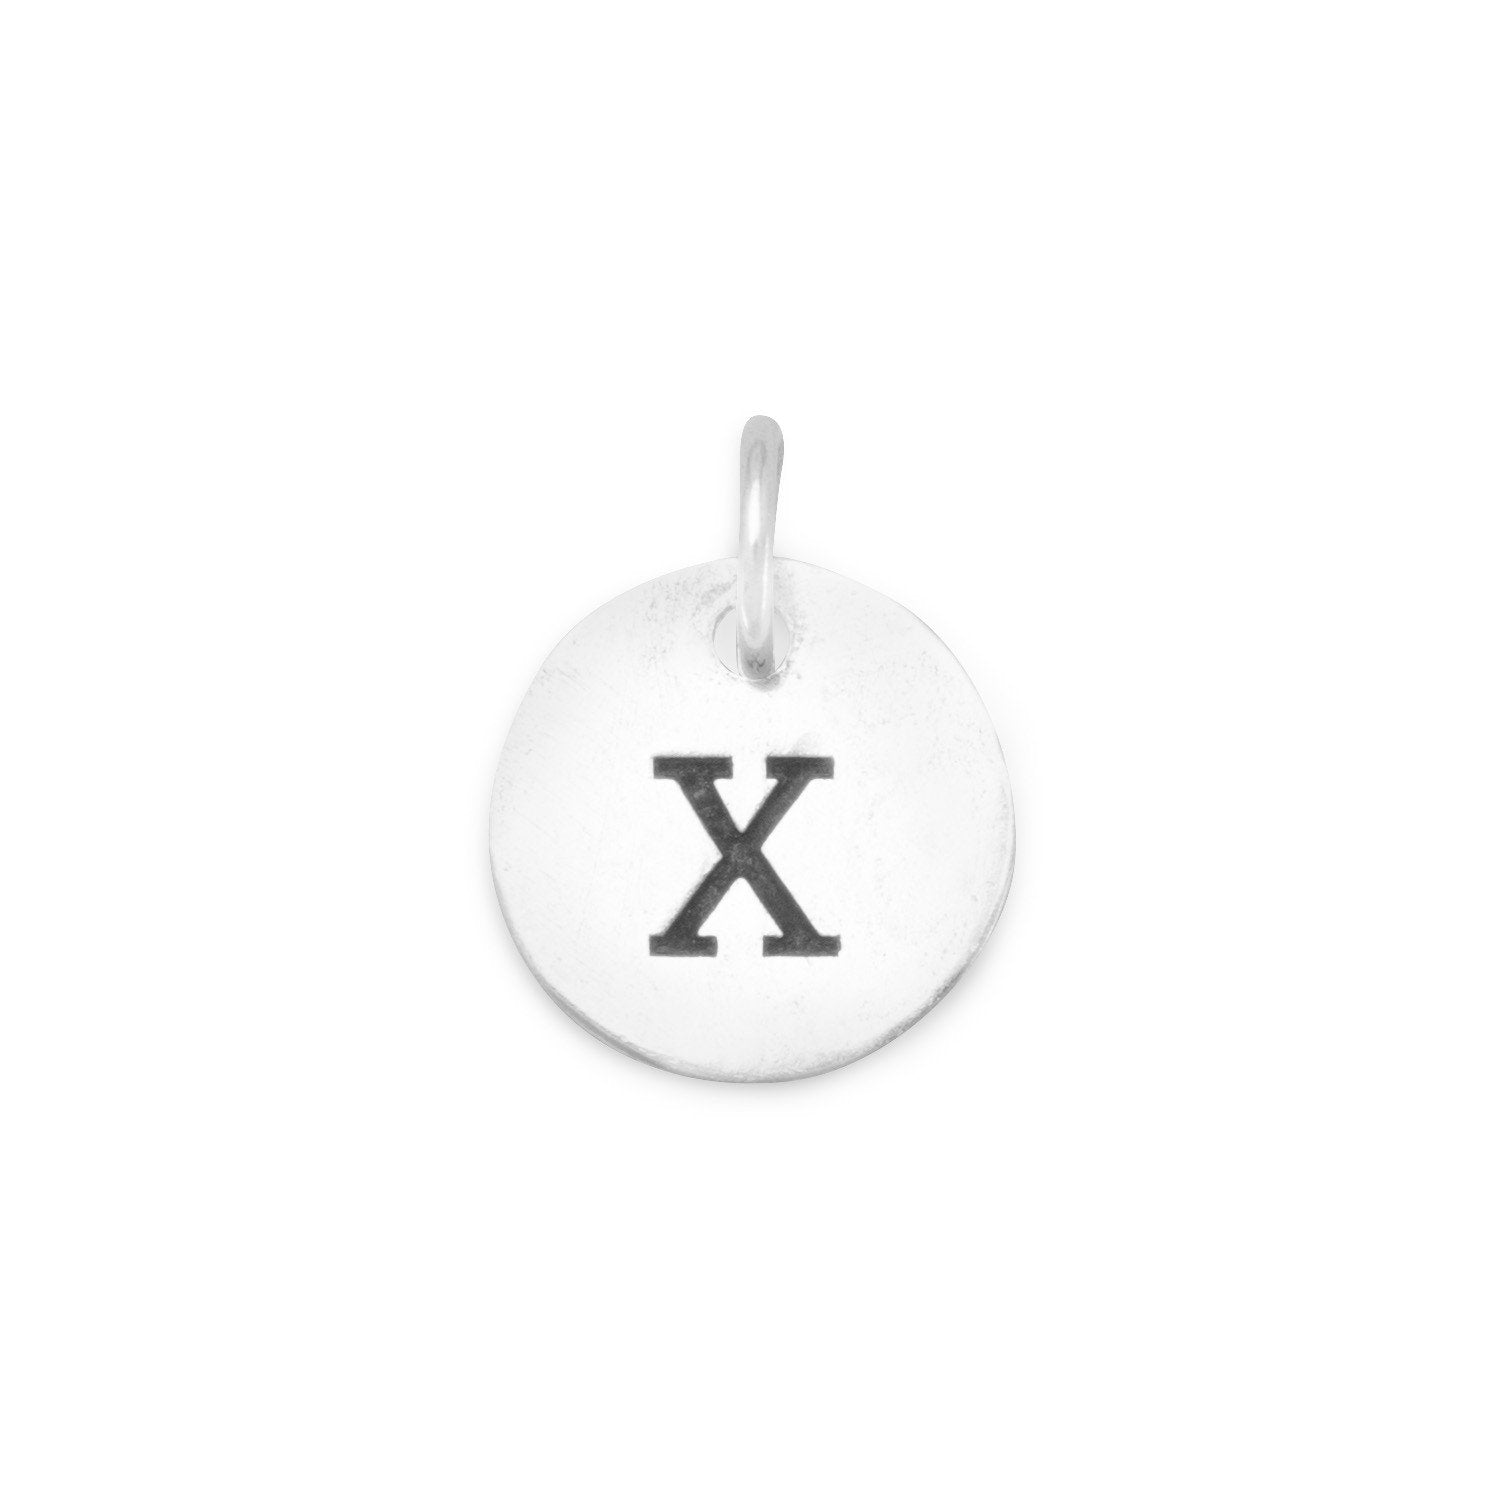 Oxidized Initial "X" Charm - Joyeria Lady